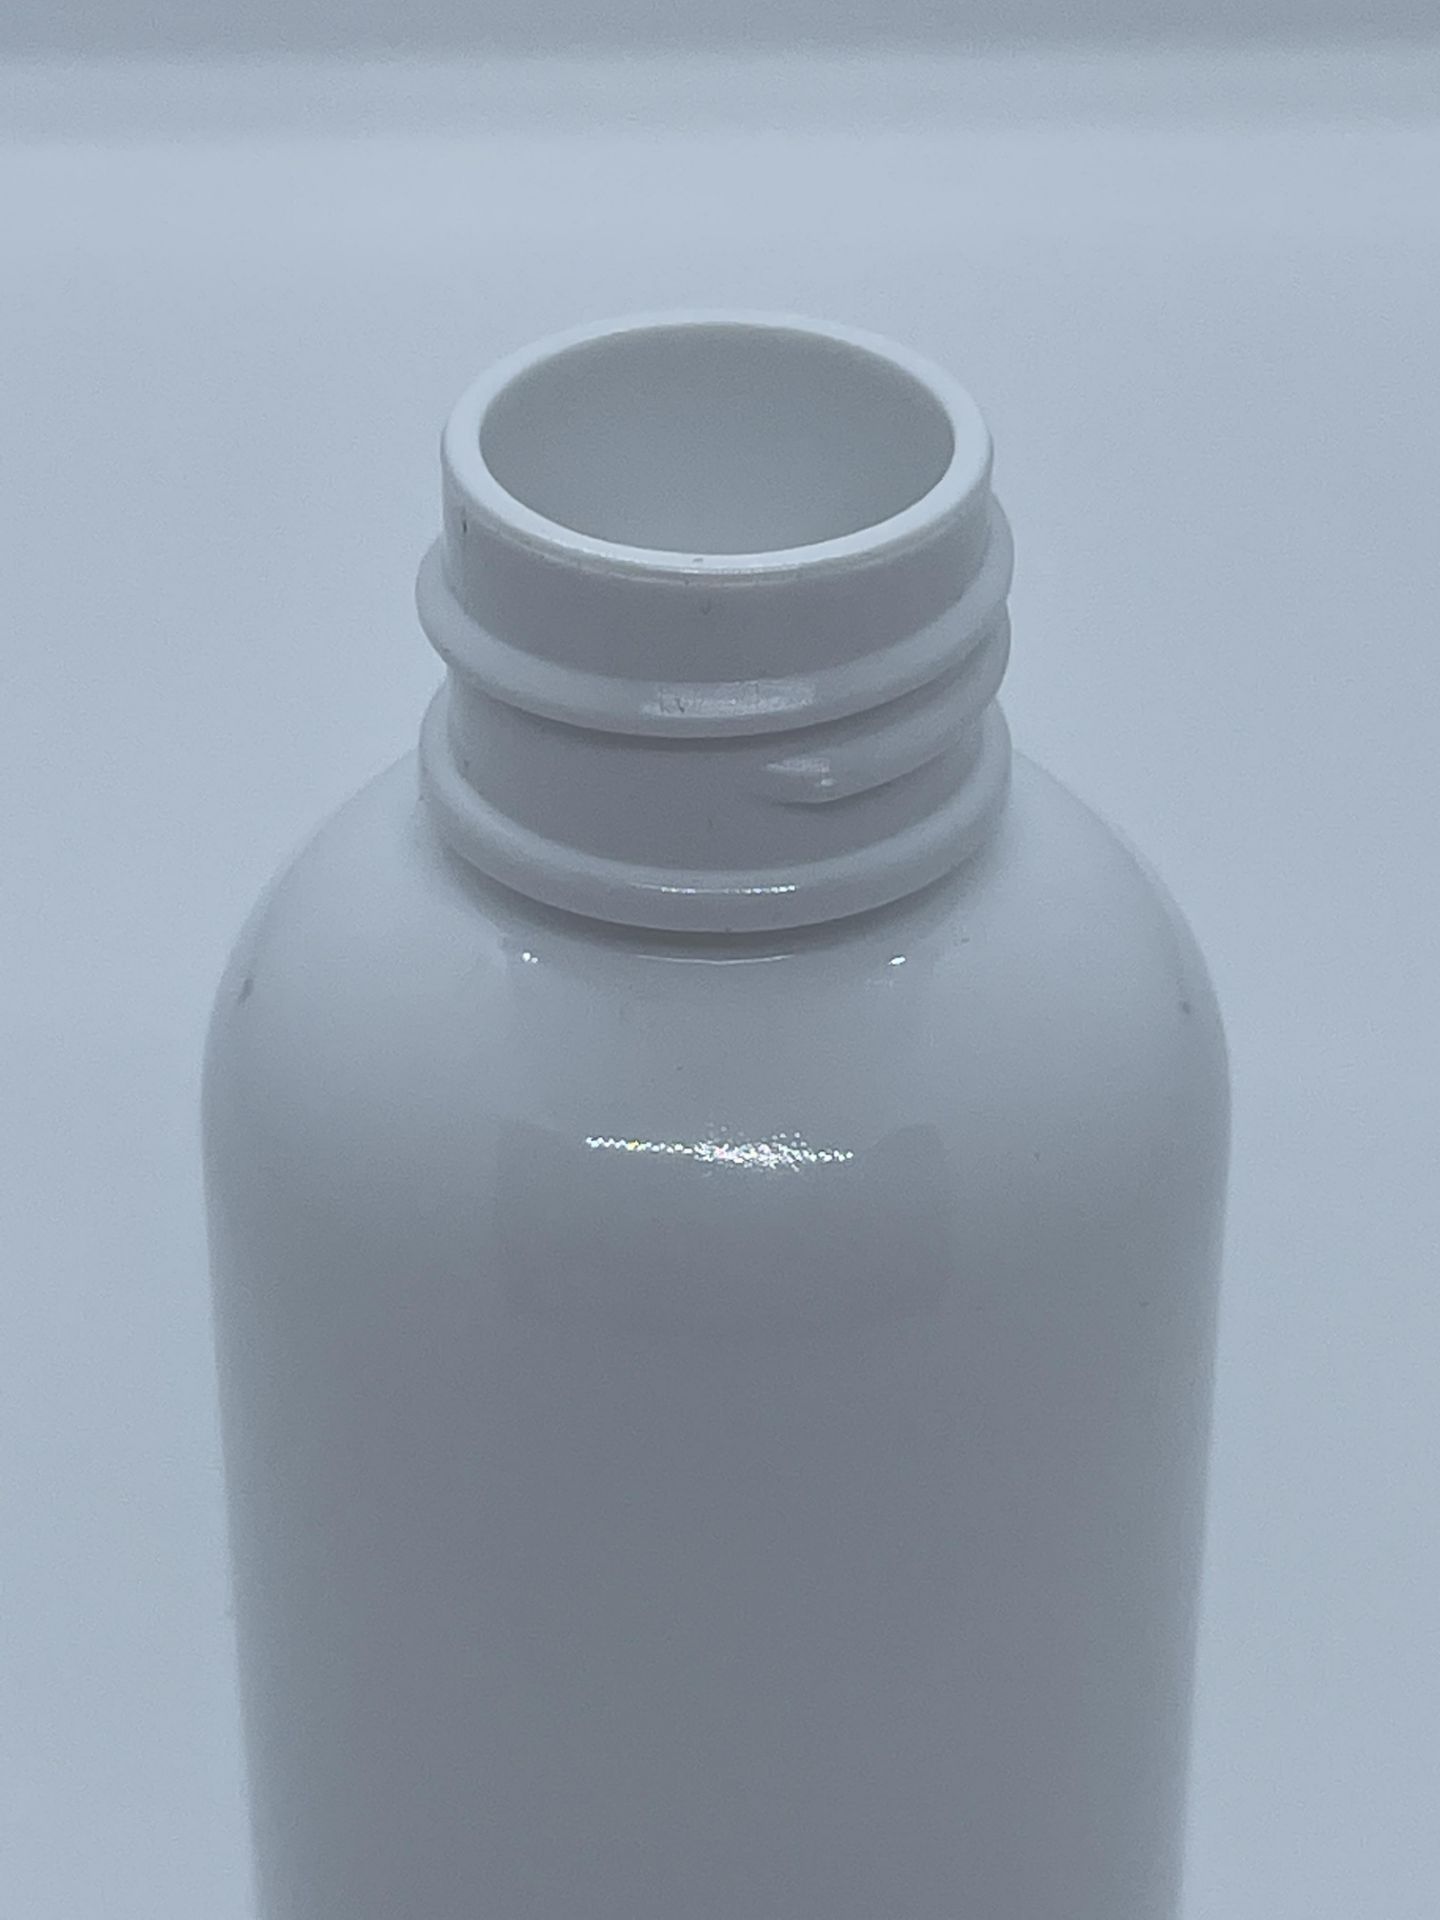 32,000 - White Plastic Bullet 2 oz Empty Bottles, 20-410 Threading Neck, 3.25" Tall, 1.25" Diameter - Image 3 of 8